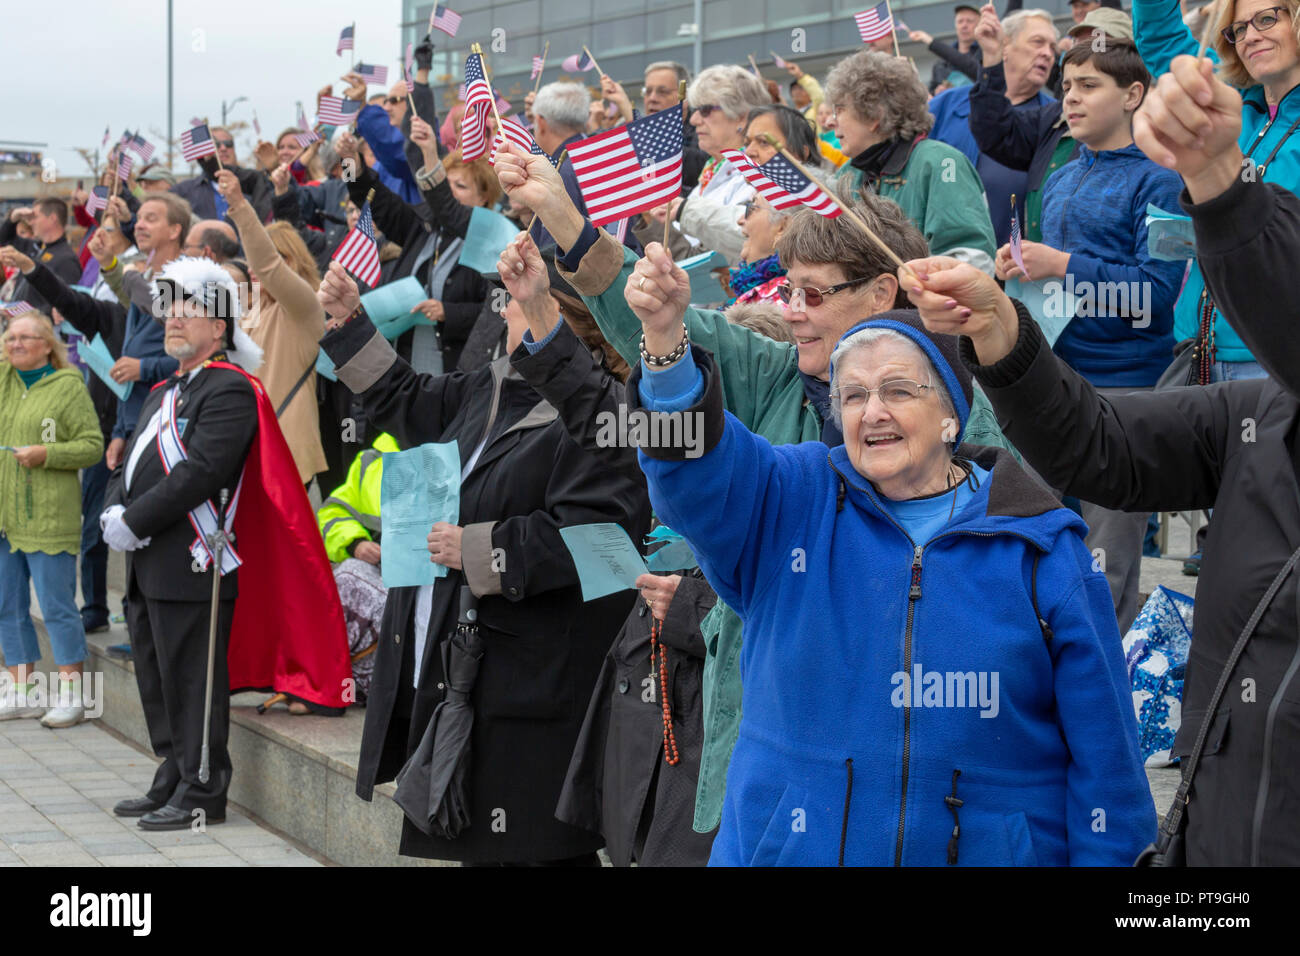 Detroit, Michigan, USA - 7 octobre 2018 - en agitant des drapeaux américains, les catholiques se sont réunies à la rivière Détroit, la frontière internationale avec le Canada, à prier le Rosaire. Il faisait partie d'un océan à l'autre Rosaire, au cours de laquelle environ 1 000 groupes catholiques se sont réunis à côtes américaines, des frontières, et d'autres lieux publics pour prier le Rosaire. Crédit : Jim West/Alamy Live News Banque D'Images